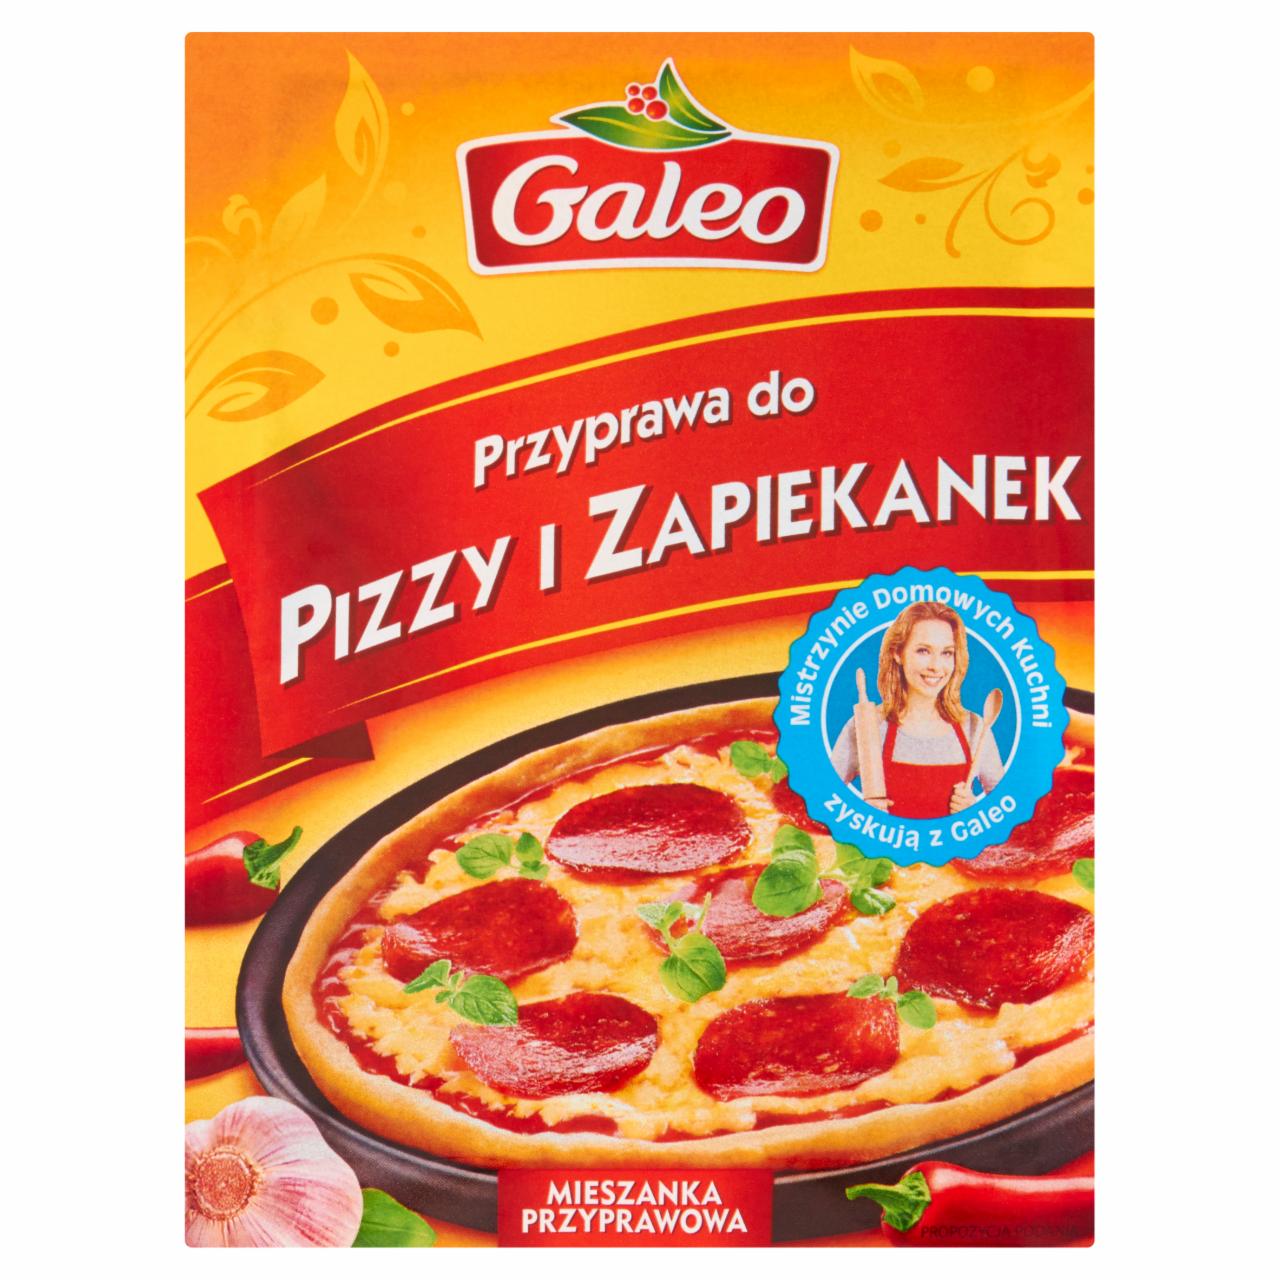 Zdjęcia - Galeo Przyprawa do pizzy i zapiekanek 12 g